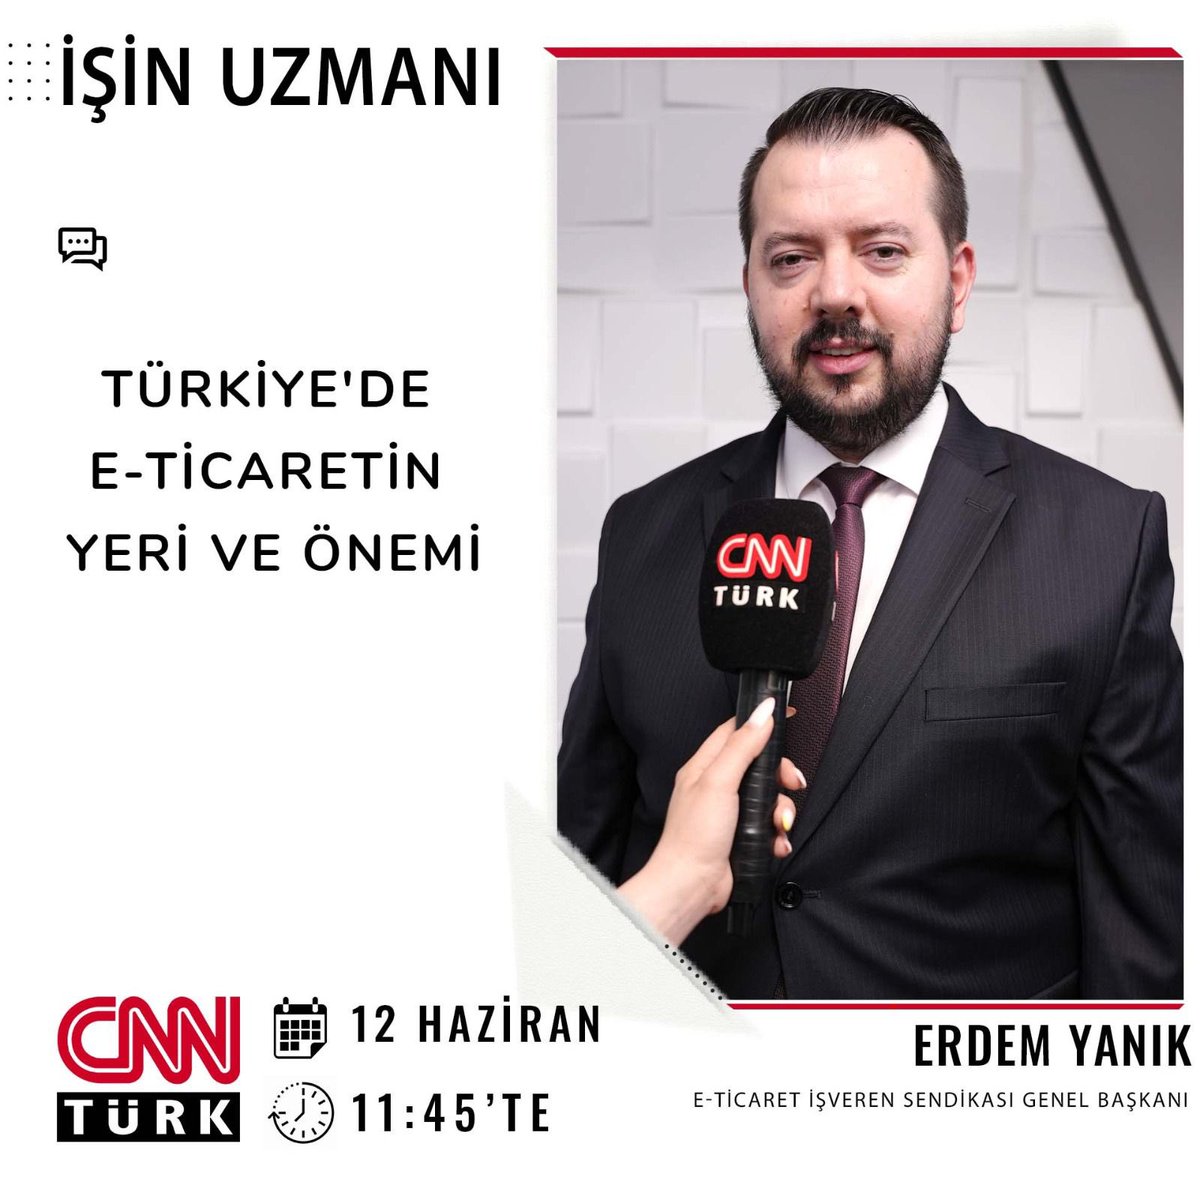 Genel Başkanımız Erdem Yanık Beyfendinin CNN İle Röportajını Kaçırmayınız...

#eticaret #etis #eticaretsendikası #cnn #işinuzmanı